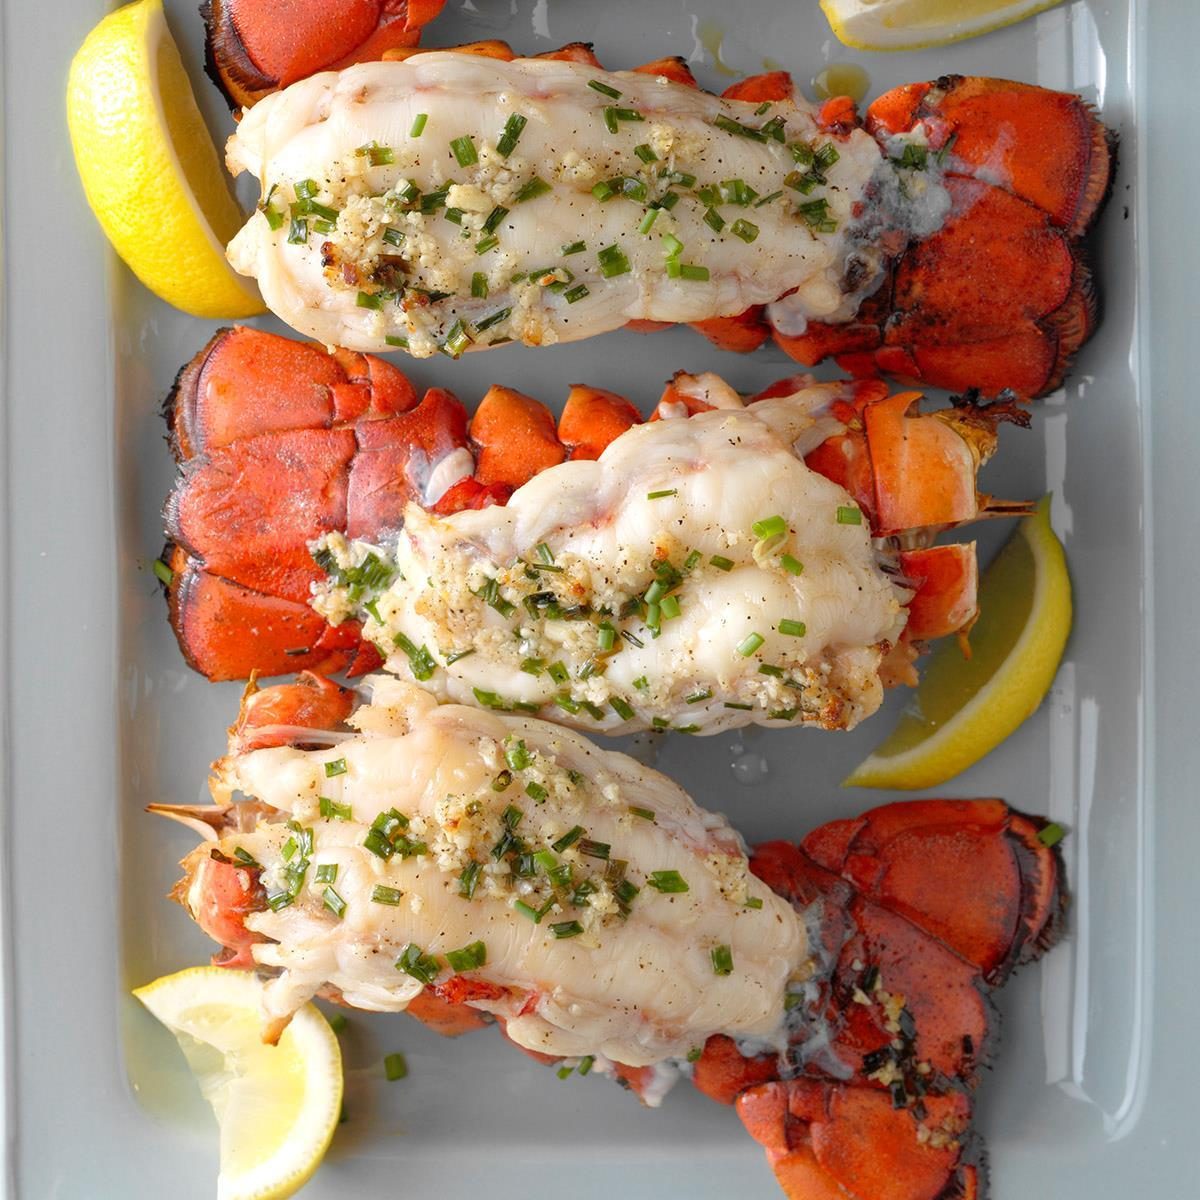 https://www.tasteofhome.com/wp-content/uploads/2018/01/Grilled-Lobster-Tails_EXPS_DIYD19_84781_B05_01_1b-2.jpg?fit=700%2C1024